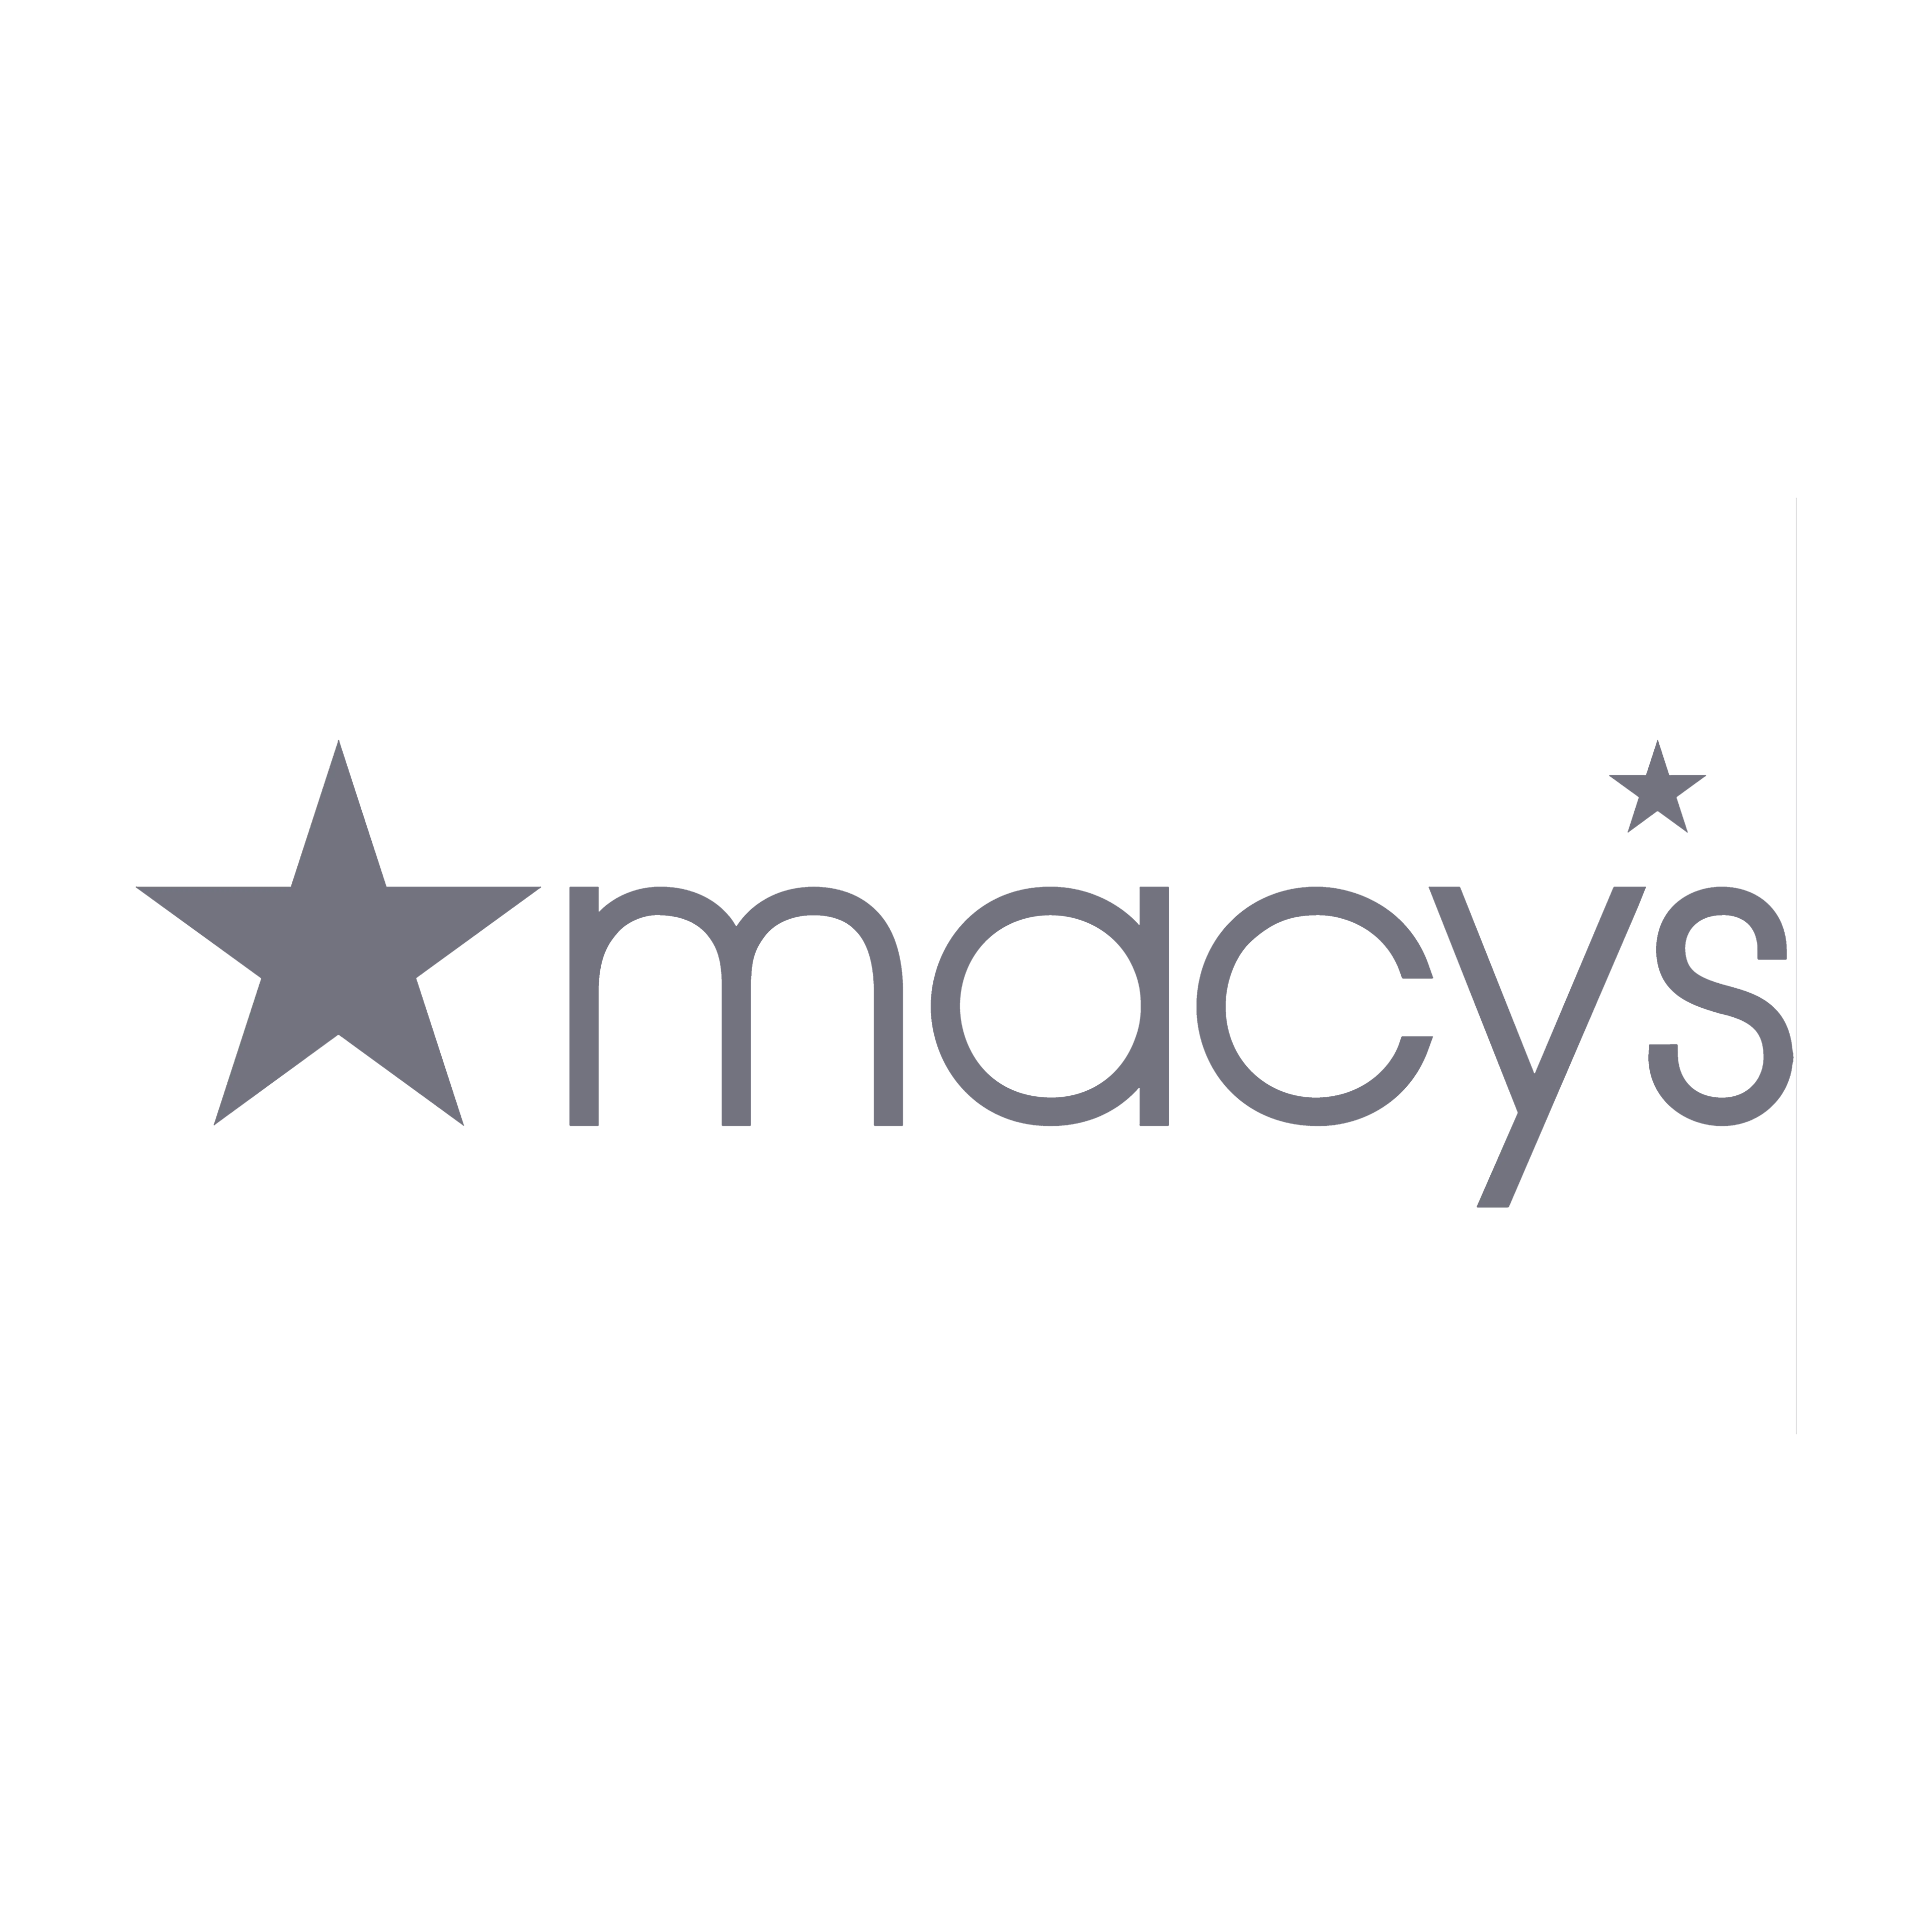 Macys Company Logo